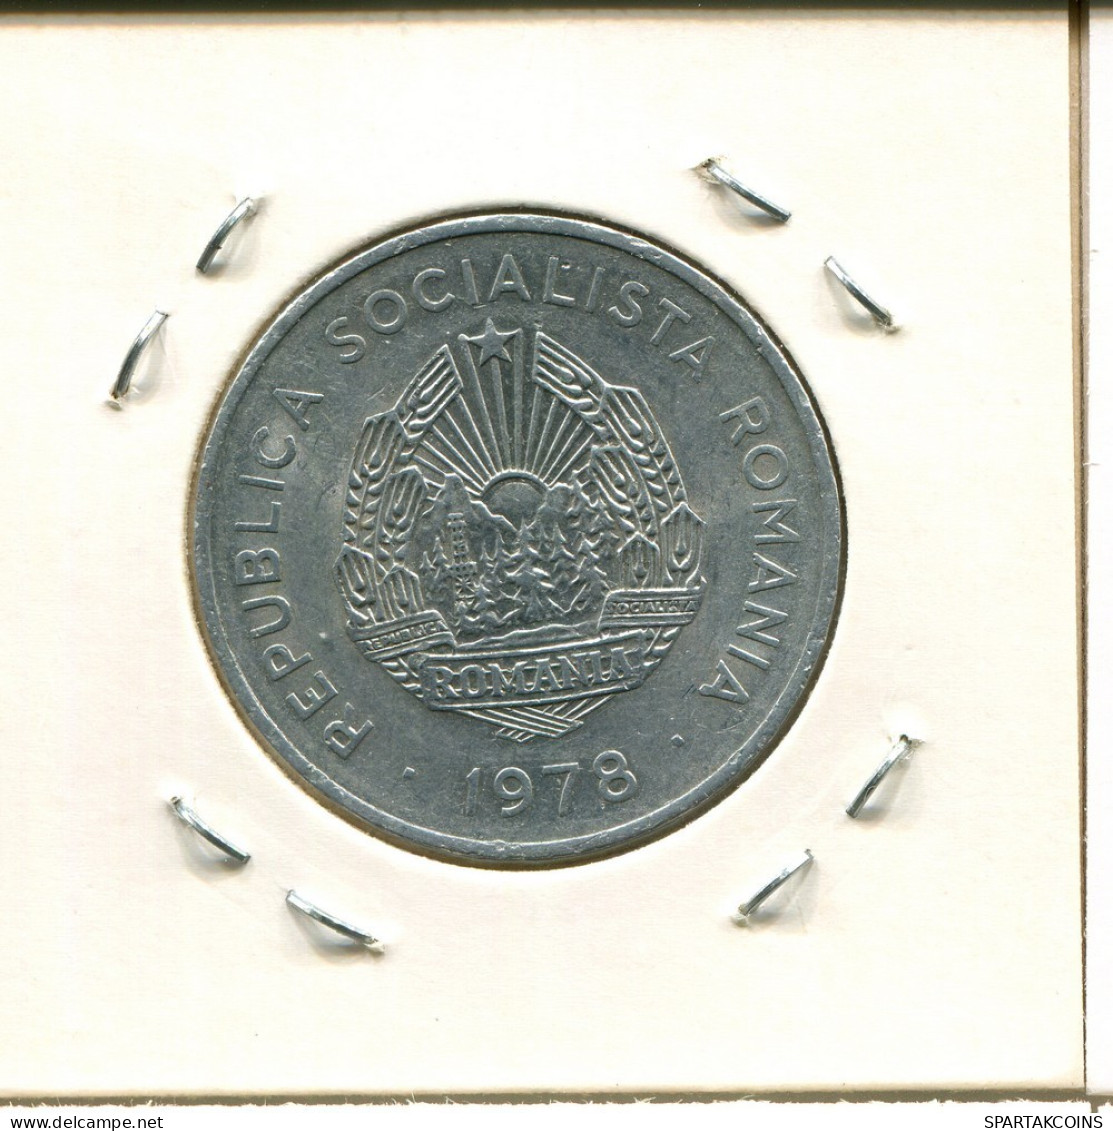 5 LEI 1978 ROMÁN OMANIA Moneda #AP669.2.E.A - Rumänien